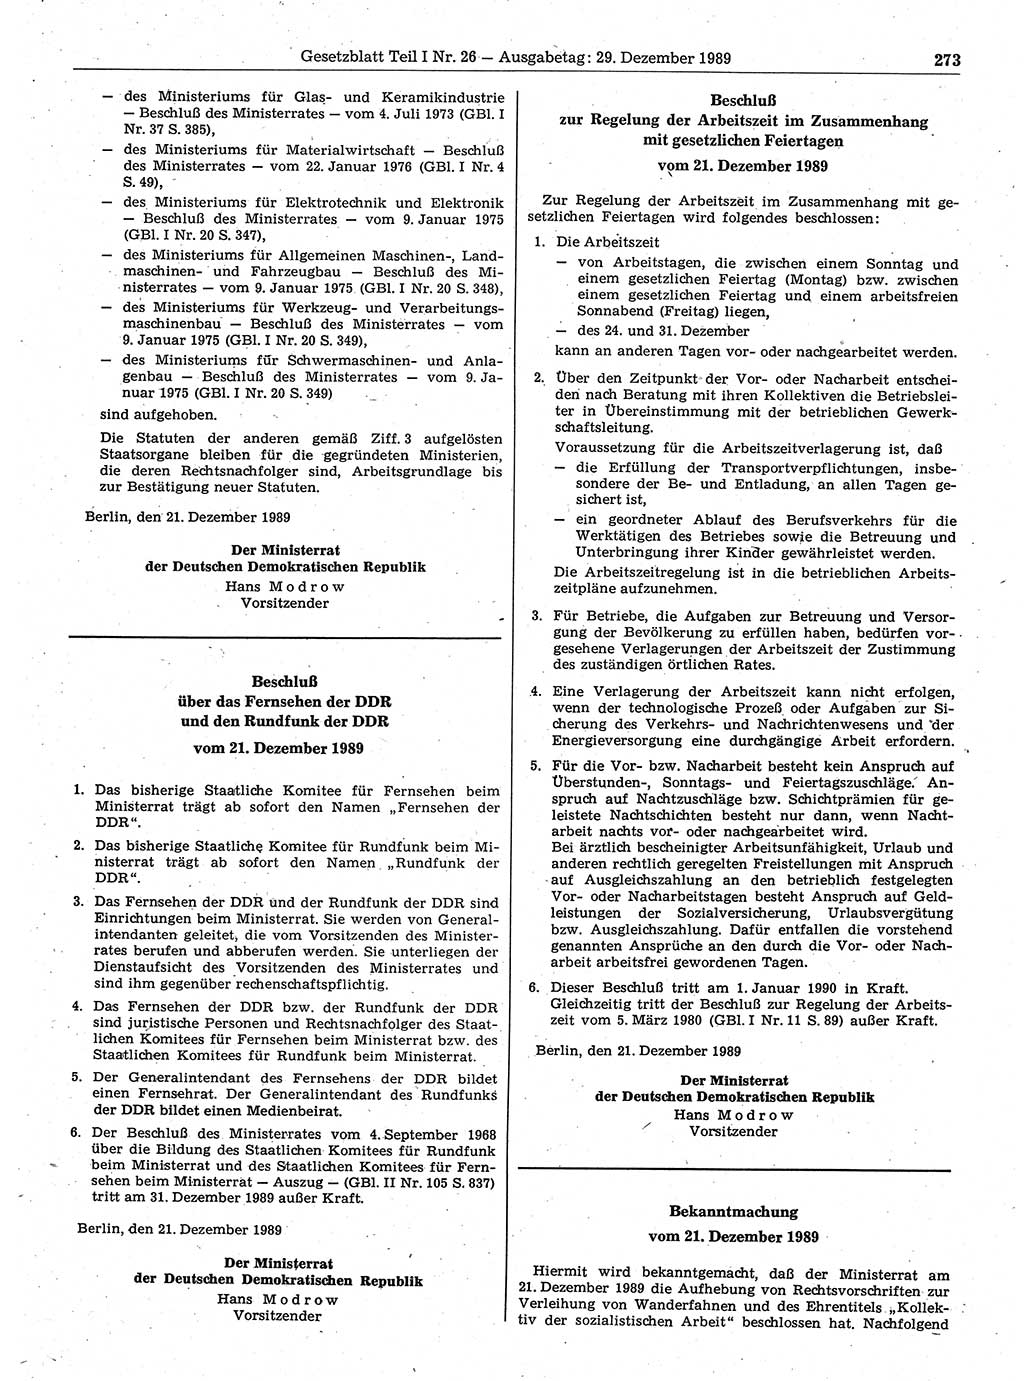 Gesetzblatt (GBl.) der Deutschen Demokratischen Republik (DDR) Teil Ⅰ 1989, Seite 273 (GBl. DDR Ⅰ 1989, S. 273)